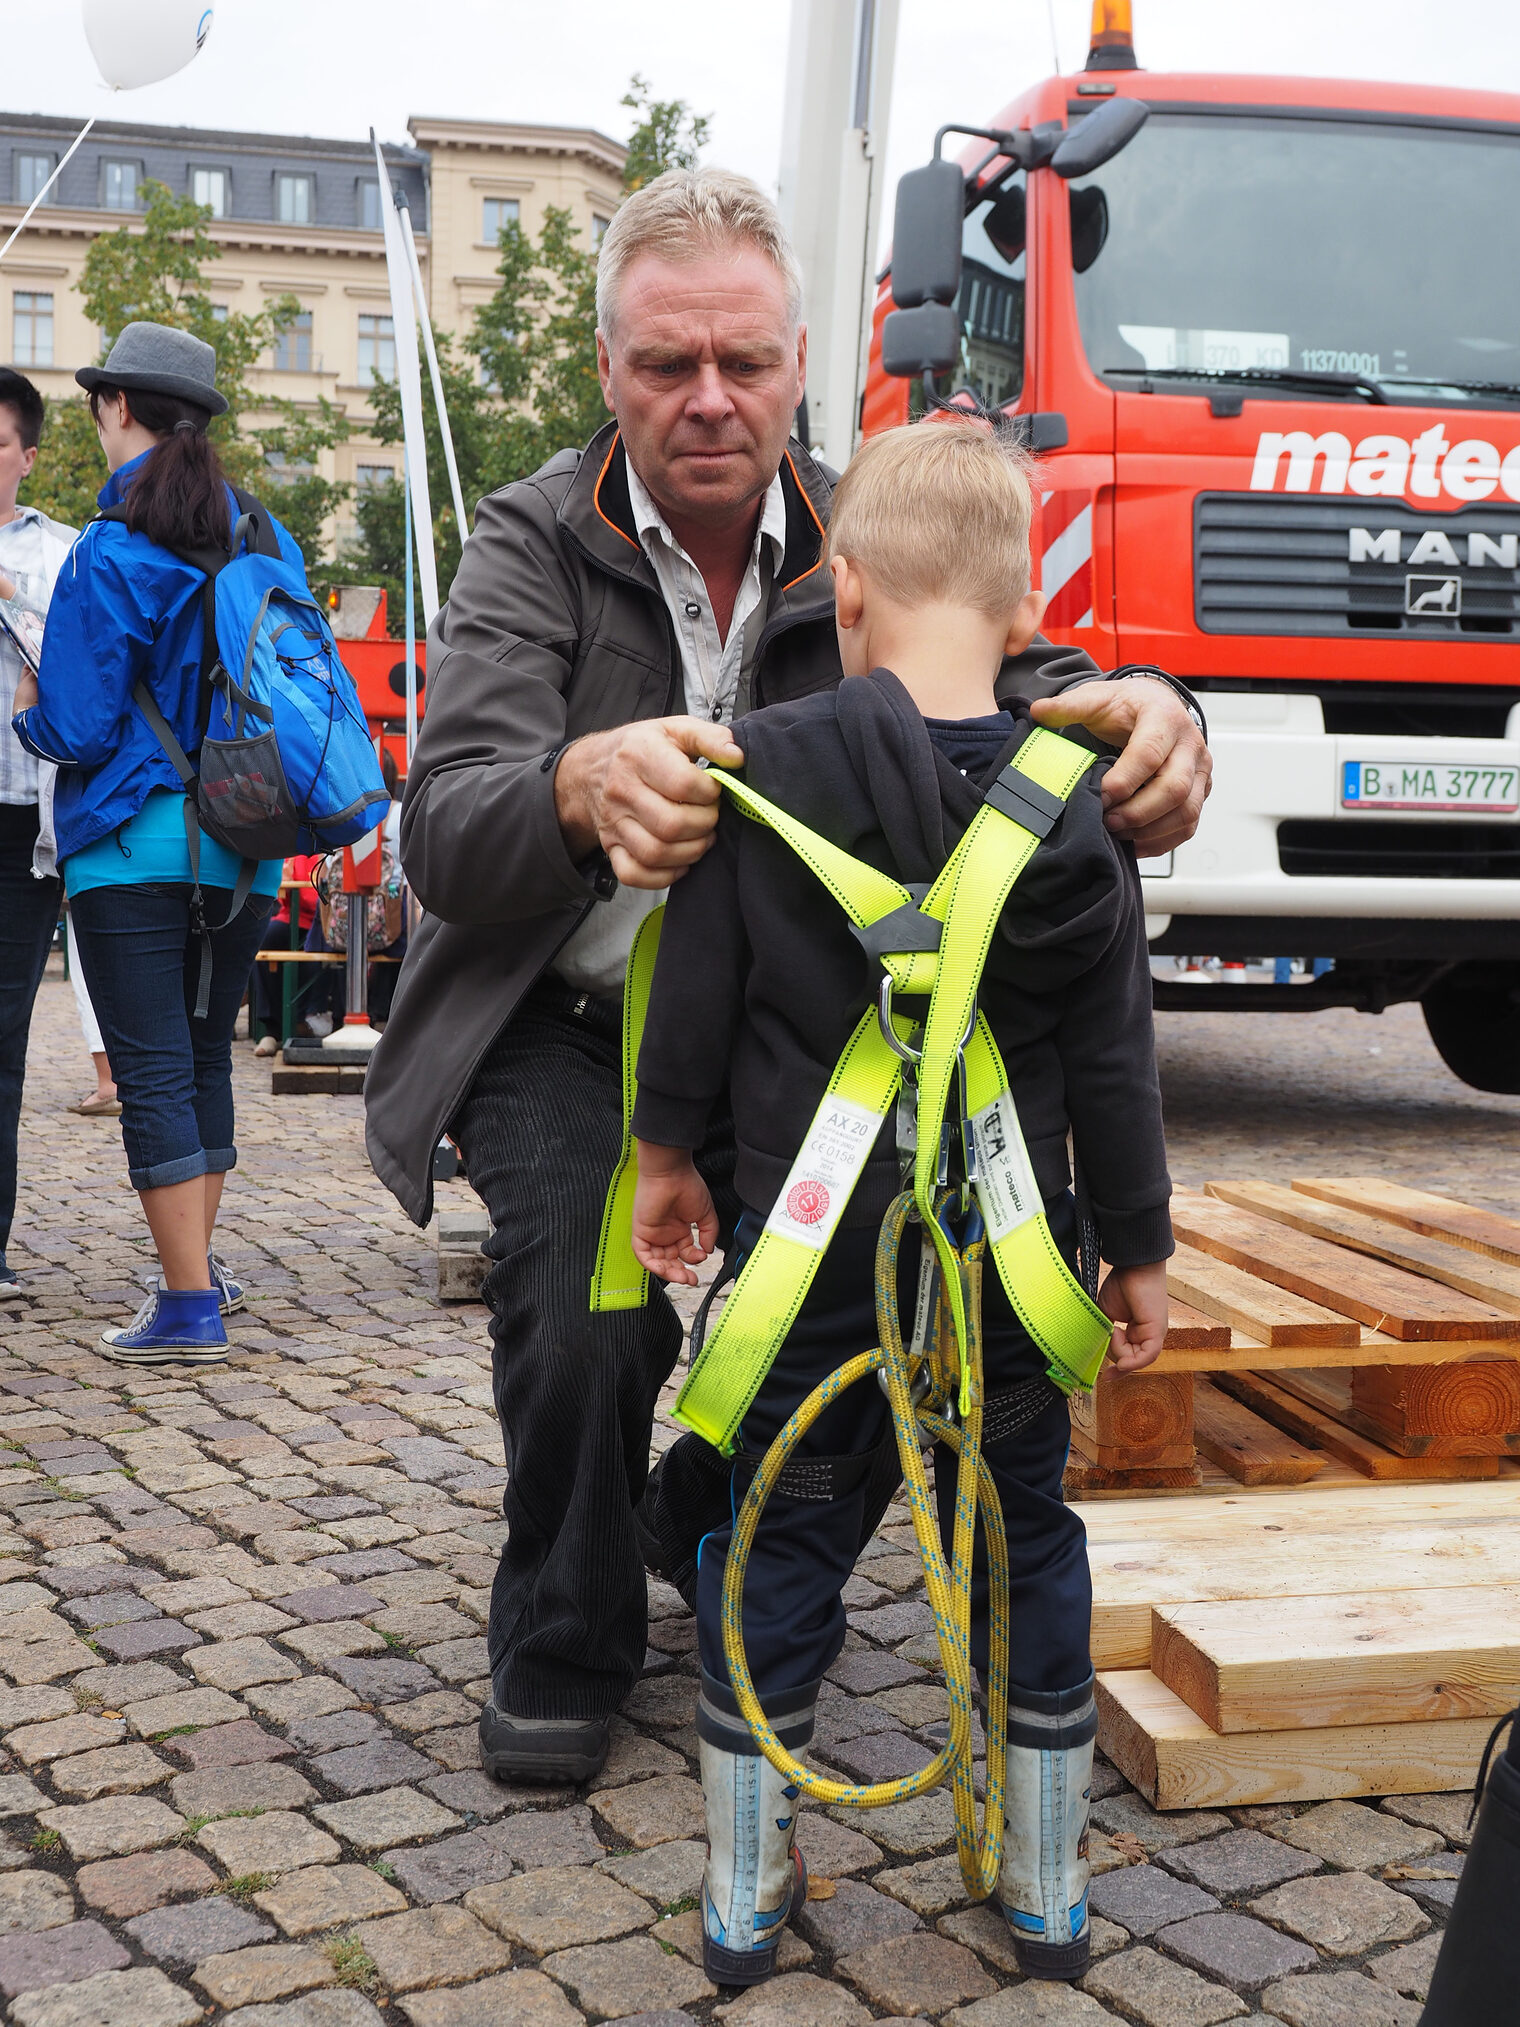 Impressionen vom "Tag des Handwerks" am 17. September 2016 in Potsdam auf dem Luisenplatz